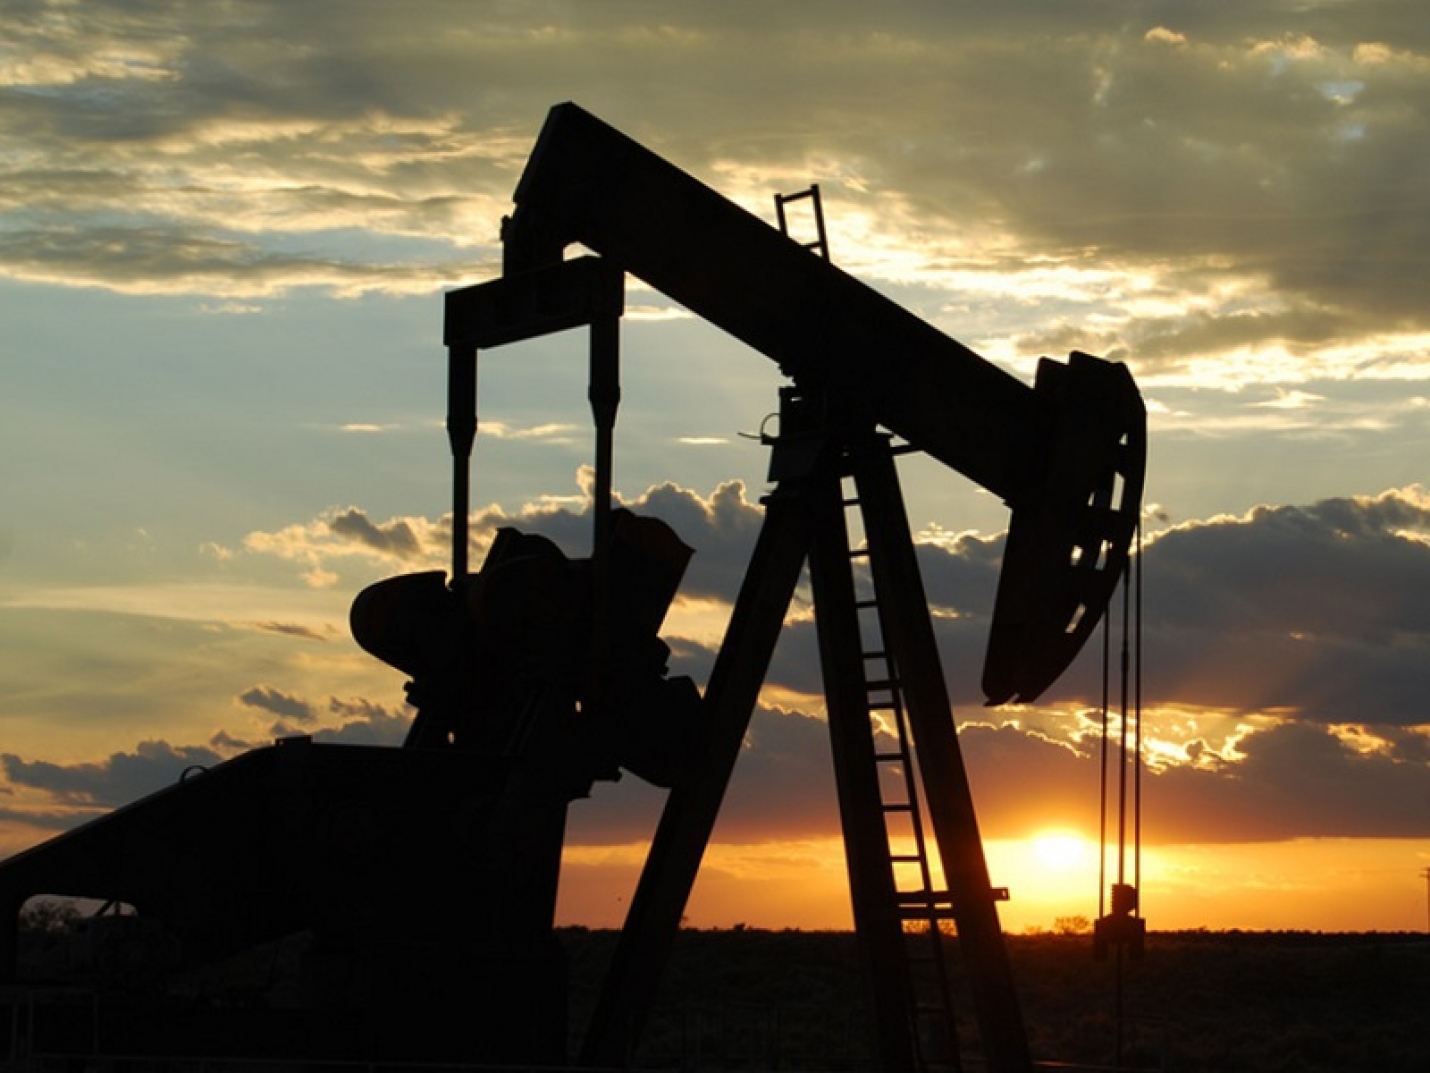 Цена нефти Brent с поставкой в мае упала ниже 24 долларов за баррель